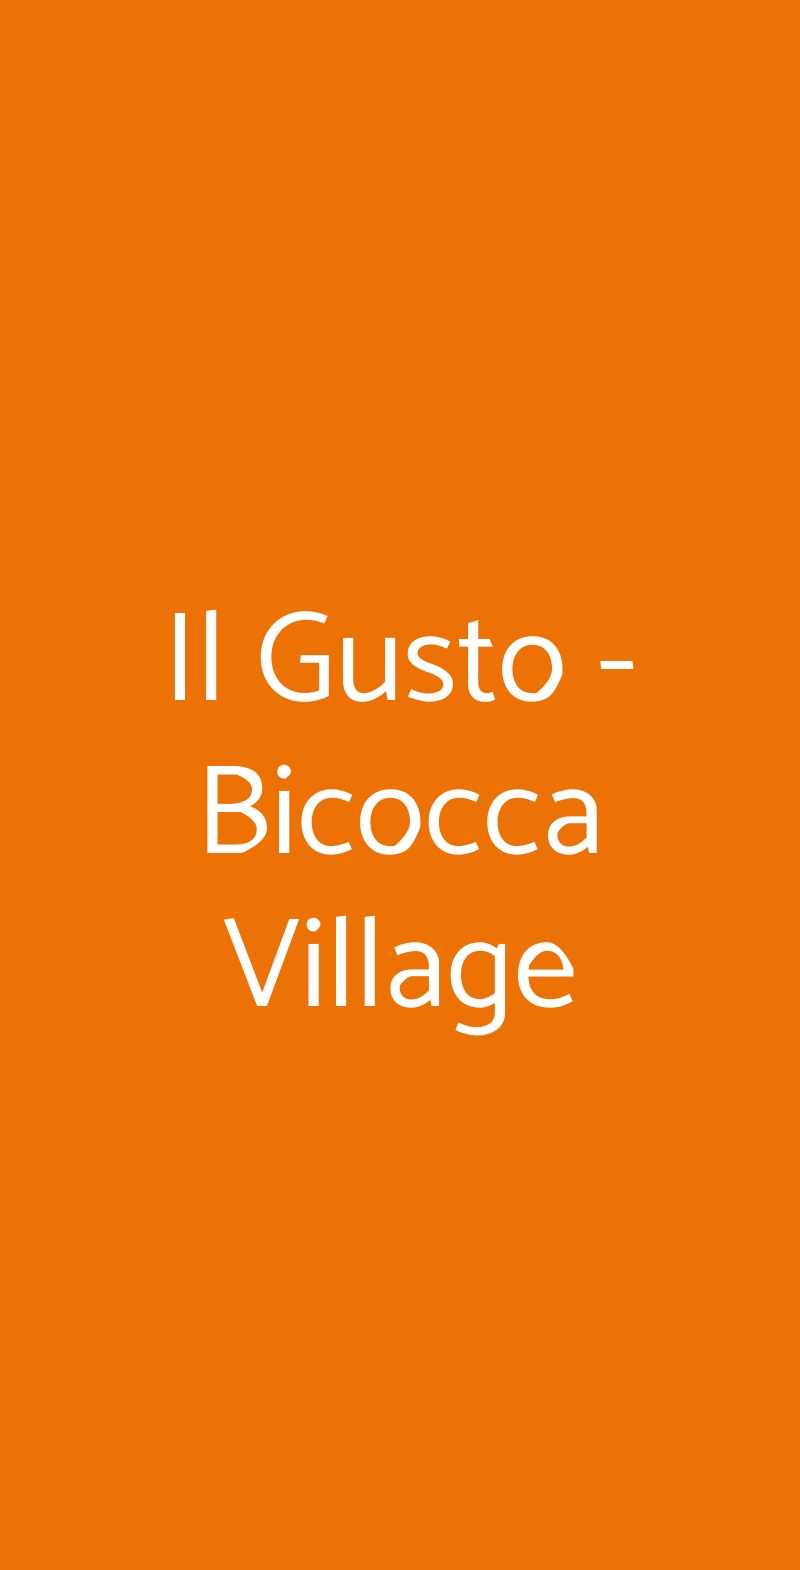 Il Gusto - Bicocca Village Milano menù 1 pagina